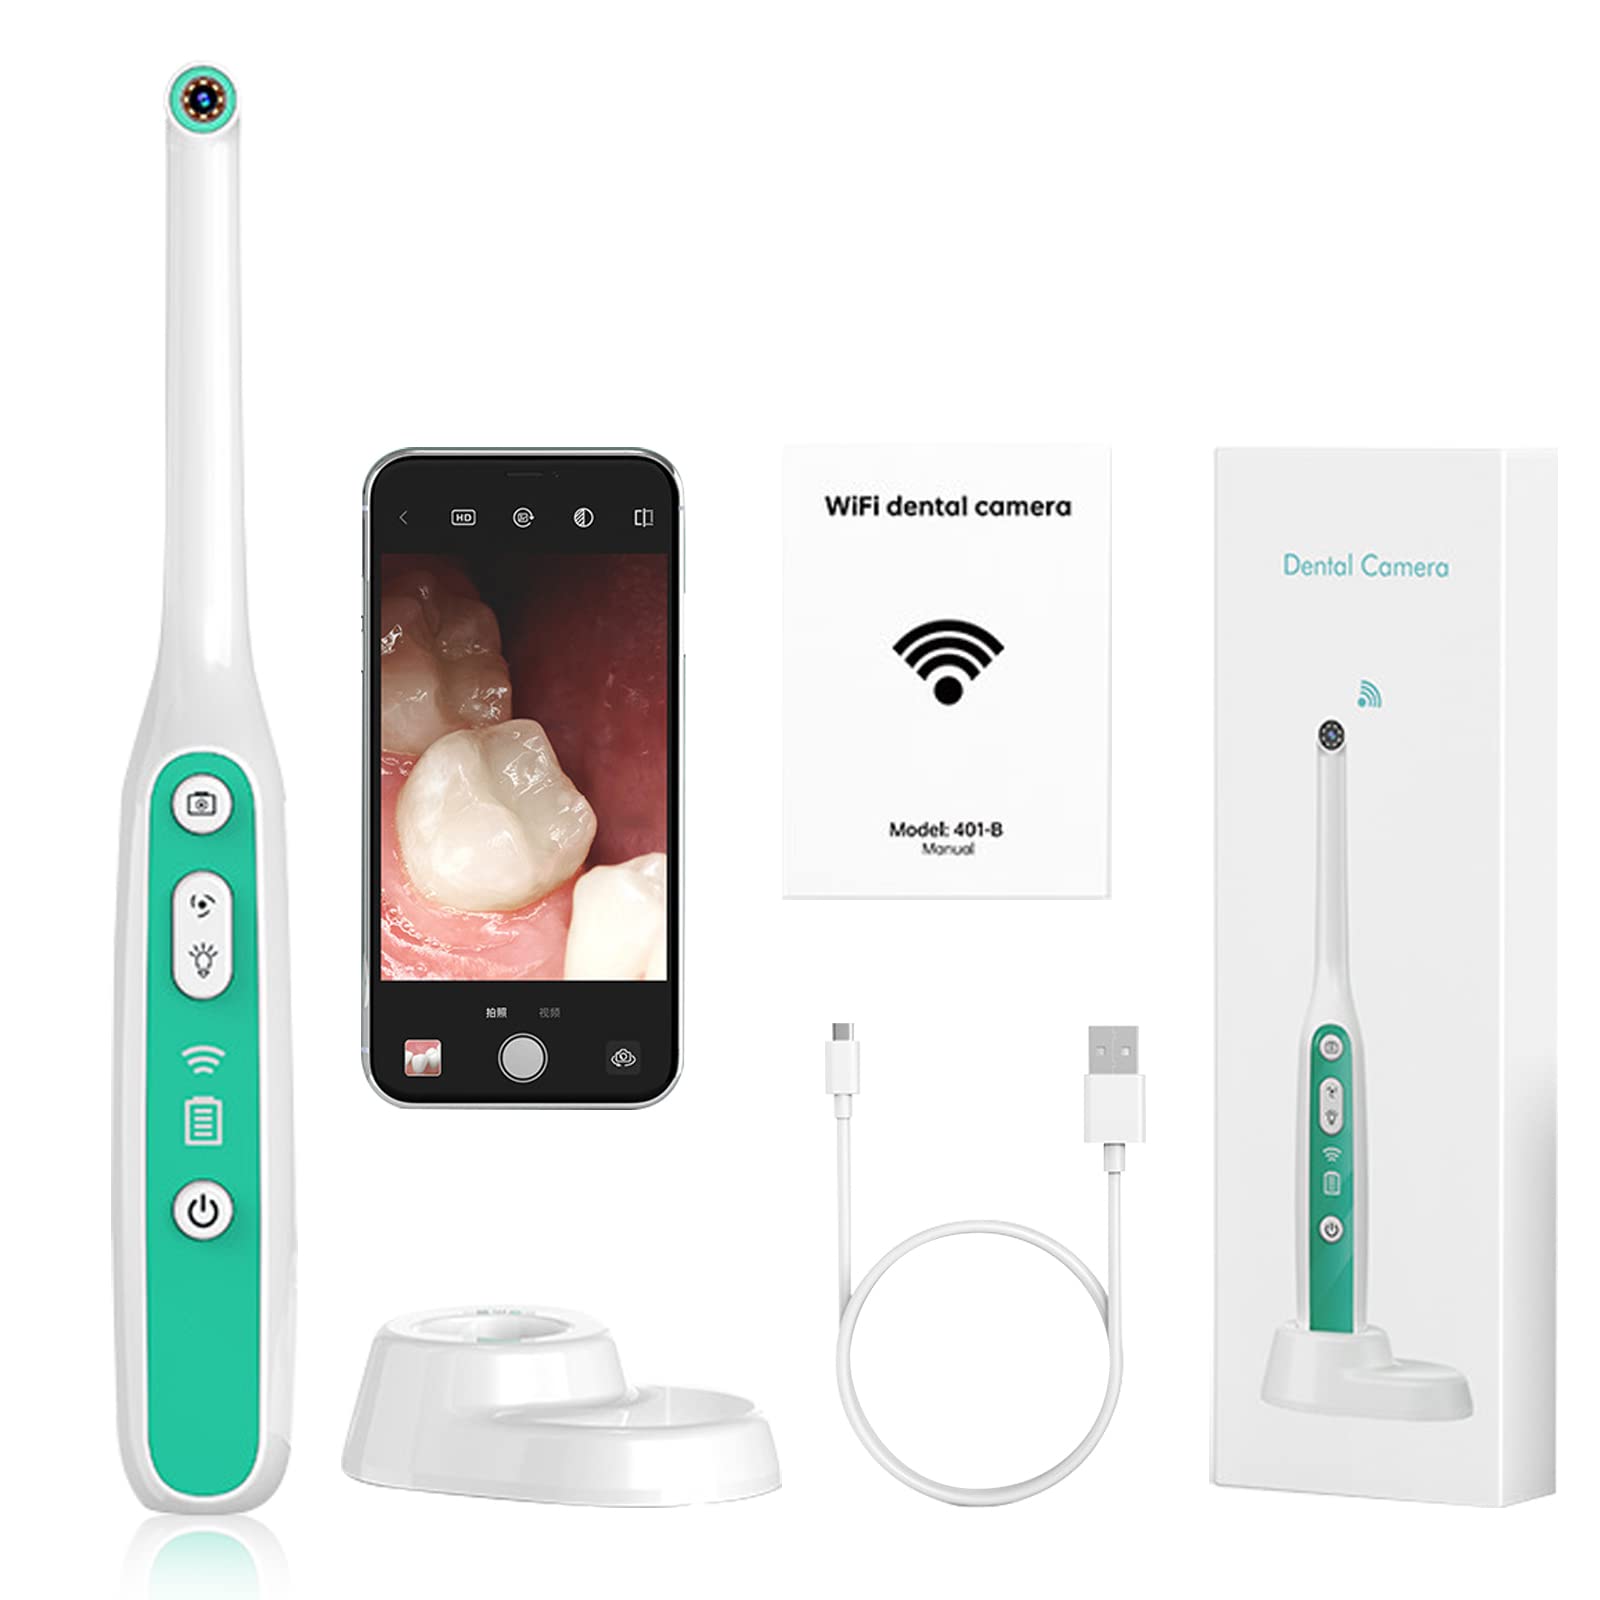 Drahtlose Intraoralkamera WiFi Inspektion Zahnarzt Spiegel Endoskopie, WiFi-Mundkamera mit LED-Licht zur oralen Inspektion von Personen und Haustieren